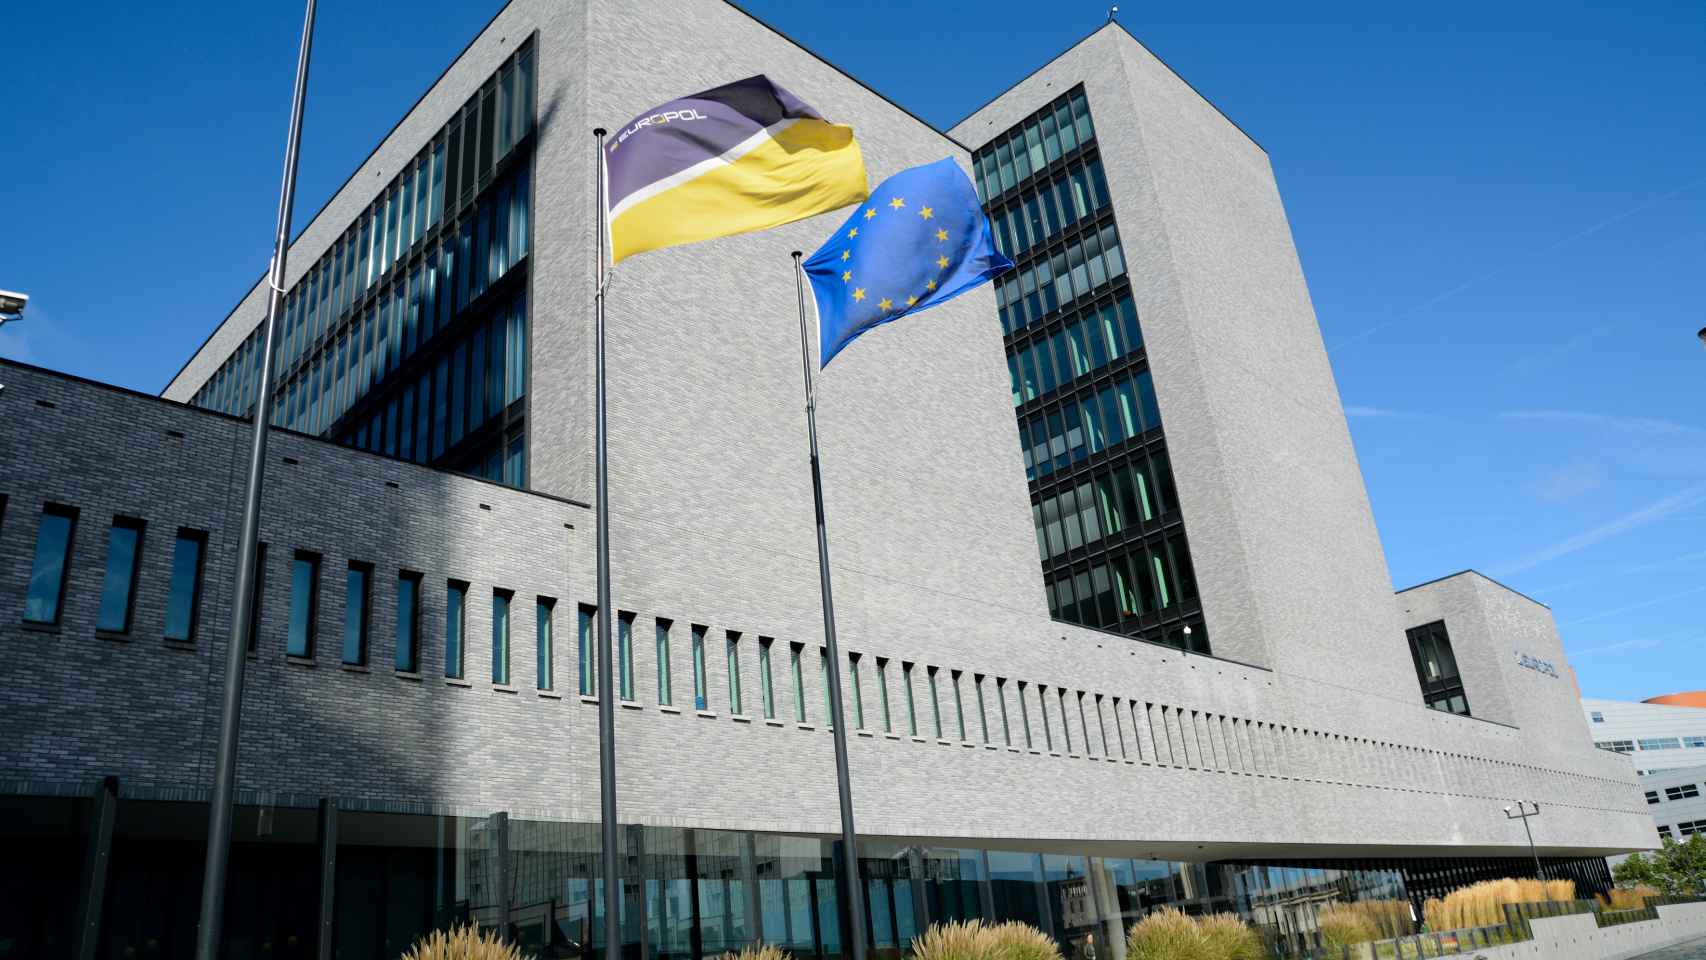 La sede de Europol en La Haya